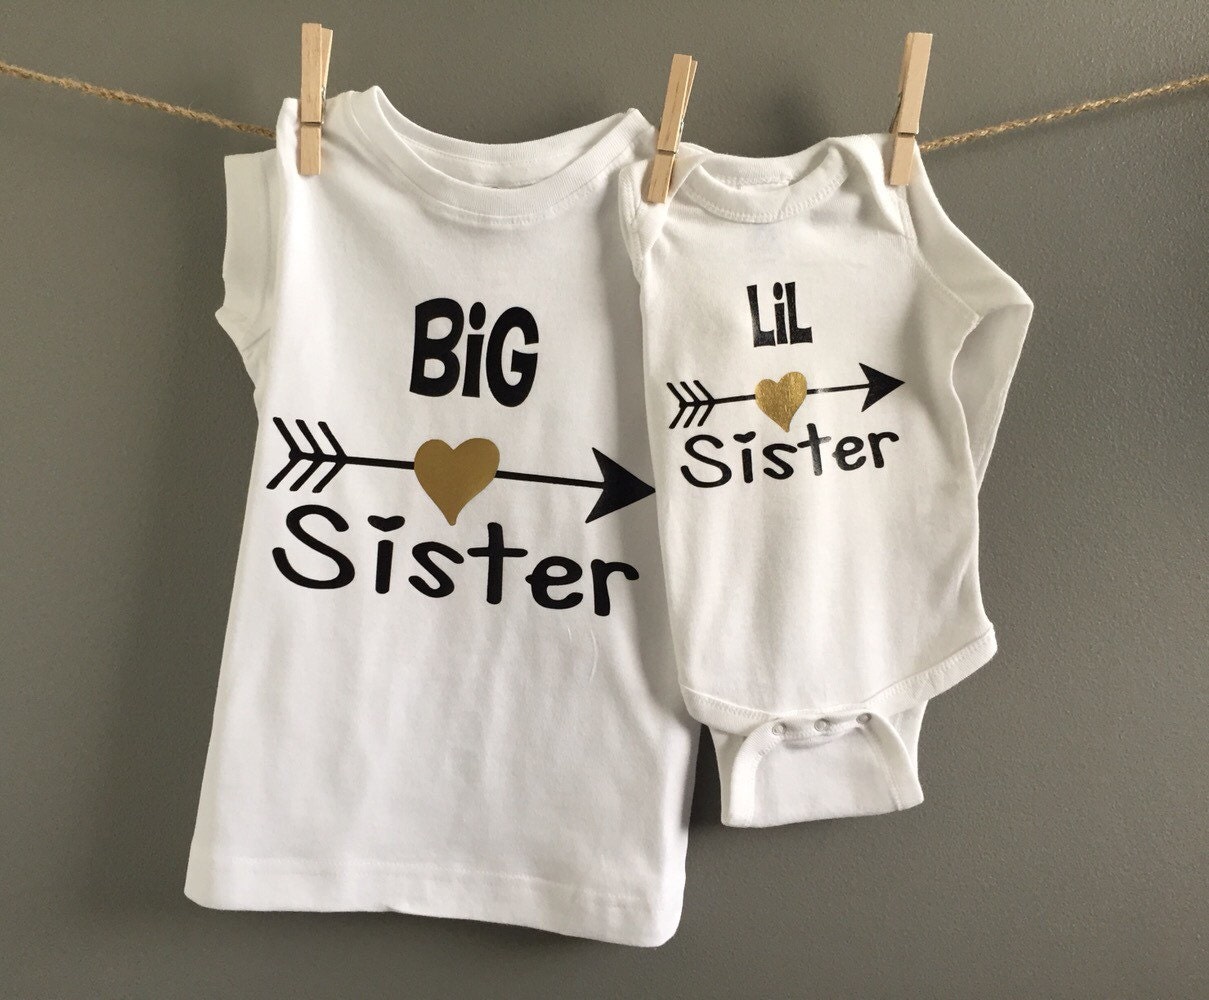 Big Sister/Little Sister Shirts Big Sister Shirt Sibling